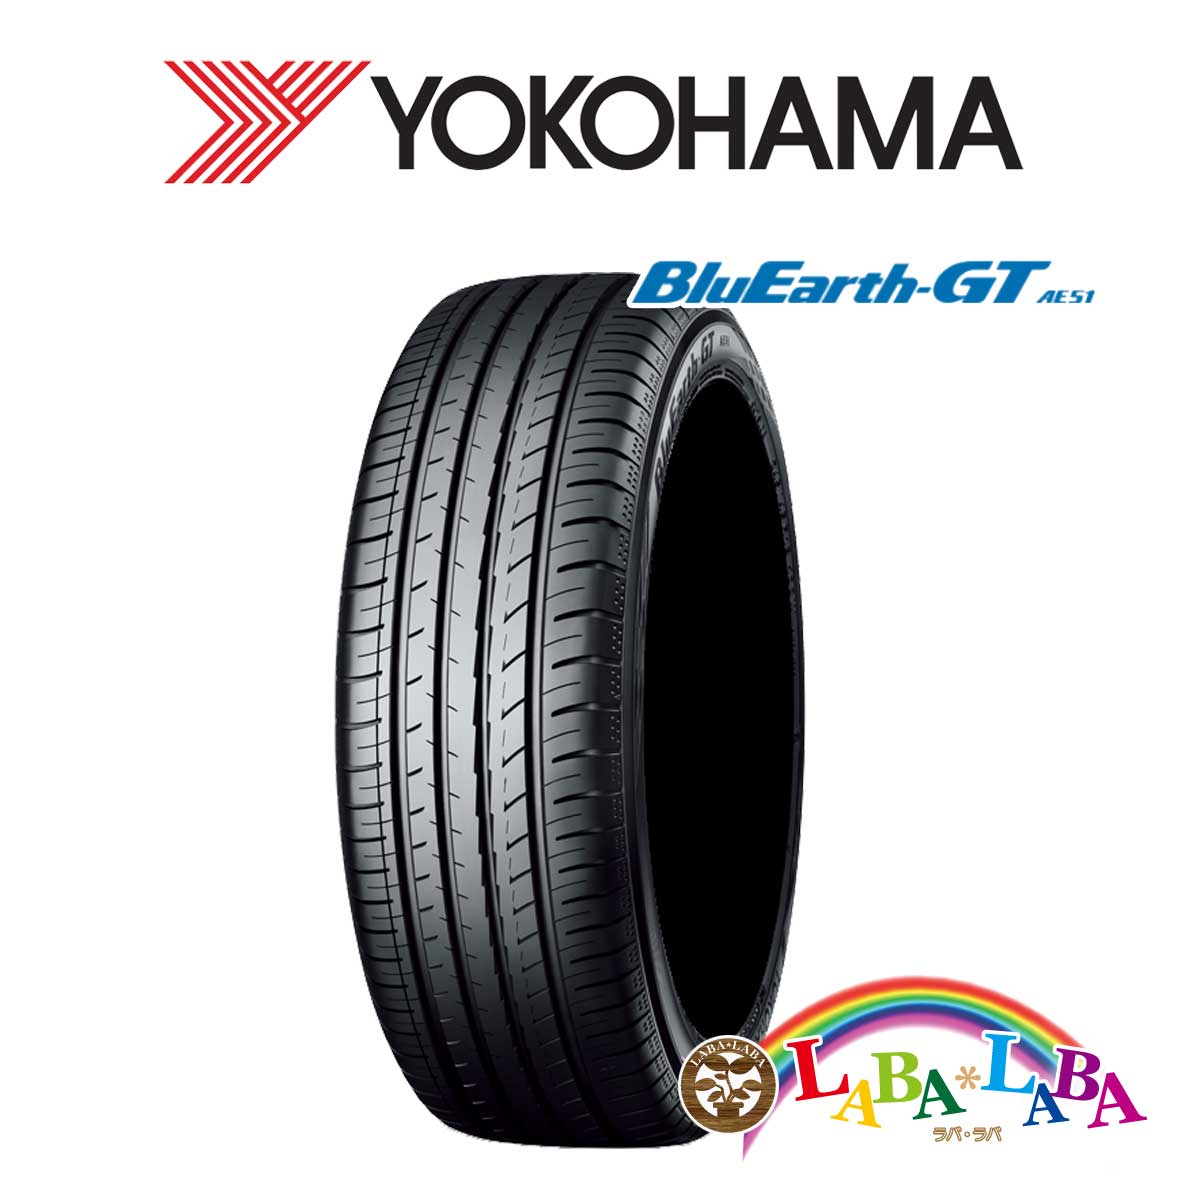 送料無料 国産タイヤ サマータイヤ 新品 タイヤのみ 2本SET YOKOHAMA ヨコハマ BluEarth-GT 195 85V 2本セット 55R15 入園入学祝い おすすめネット AE51 ブルーアース